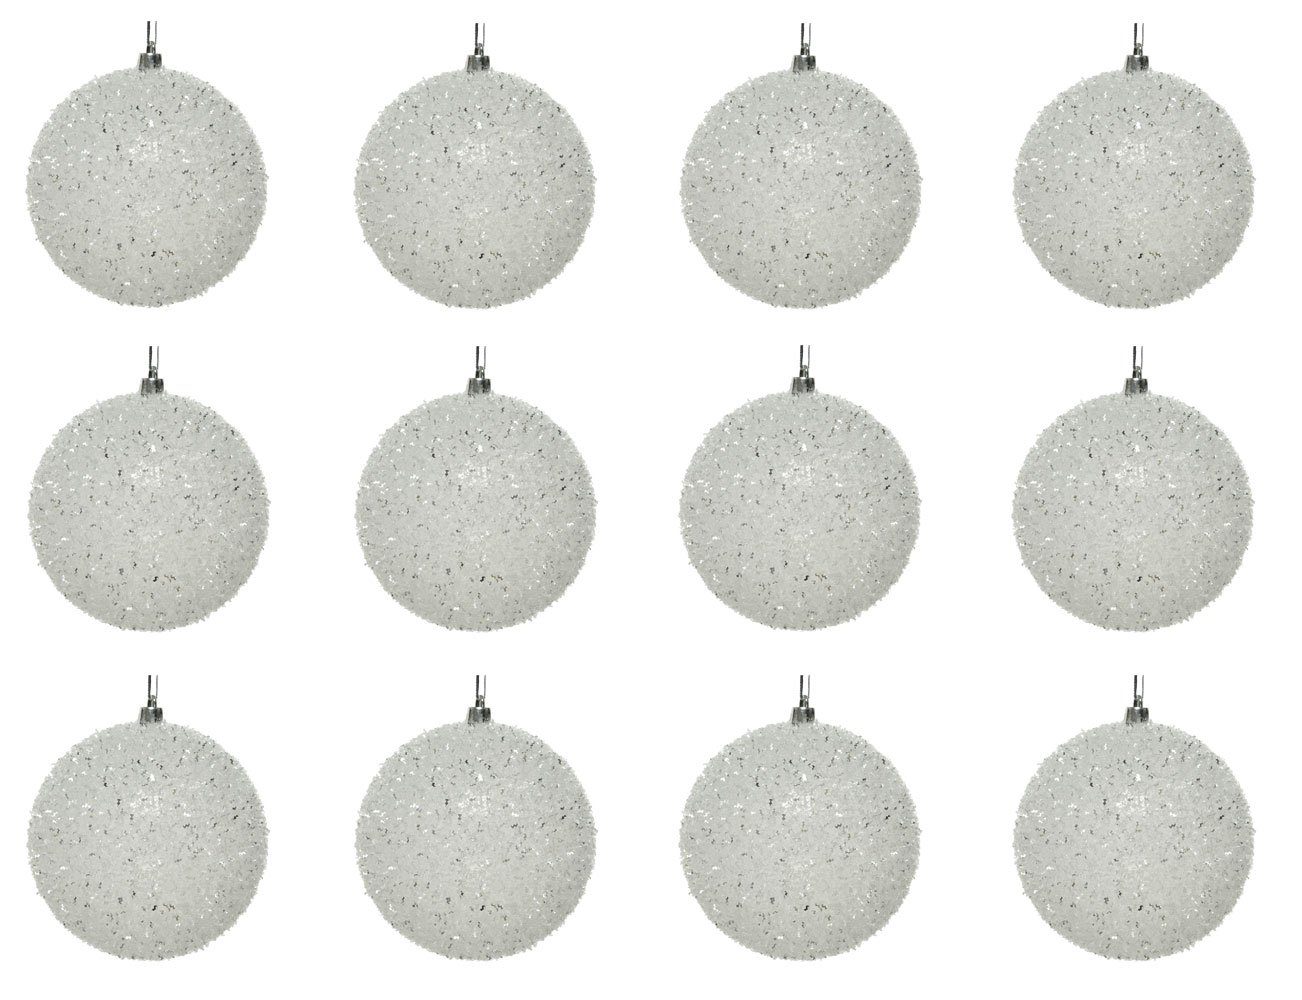 Decoris season decorations Weihnachtsbaumkugel, Weihnachtskugeln Kunststoff flauschig 10cm weiß transparent, 12er Set